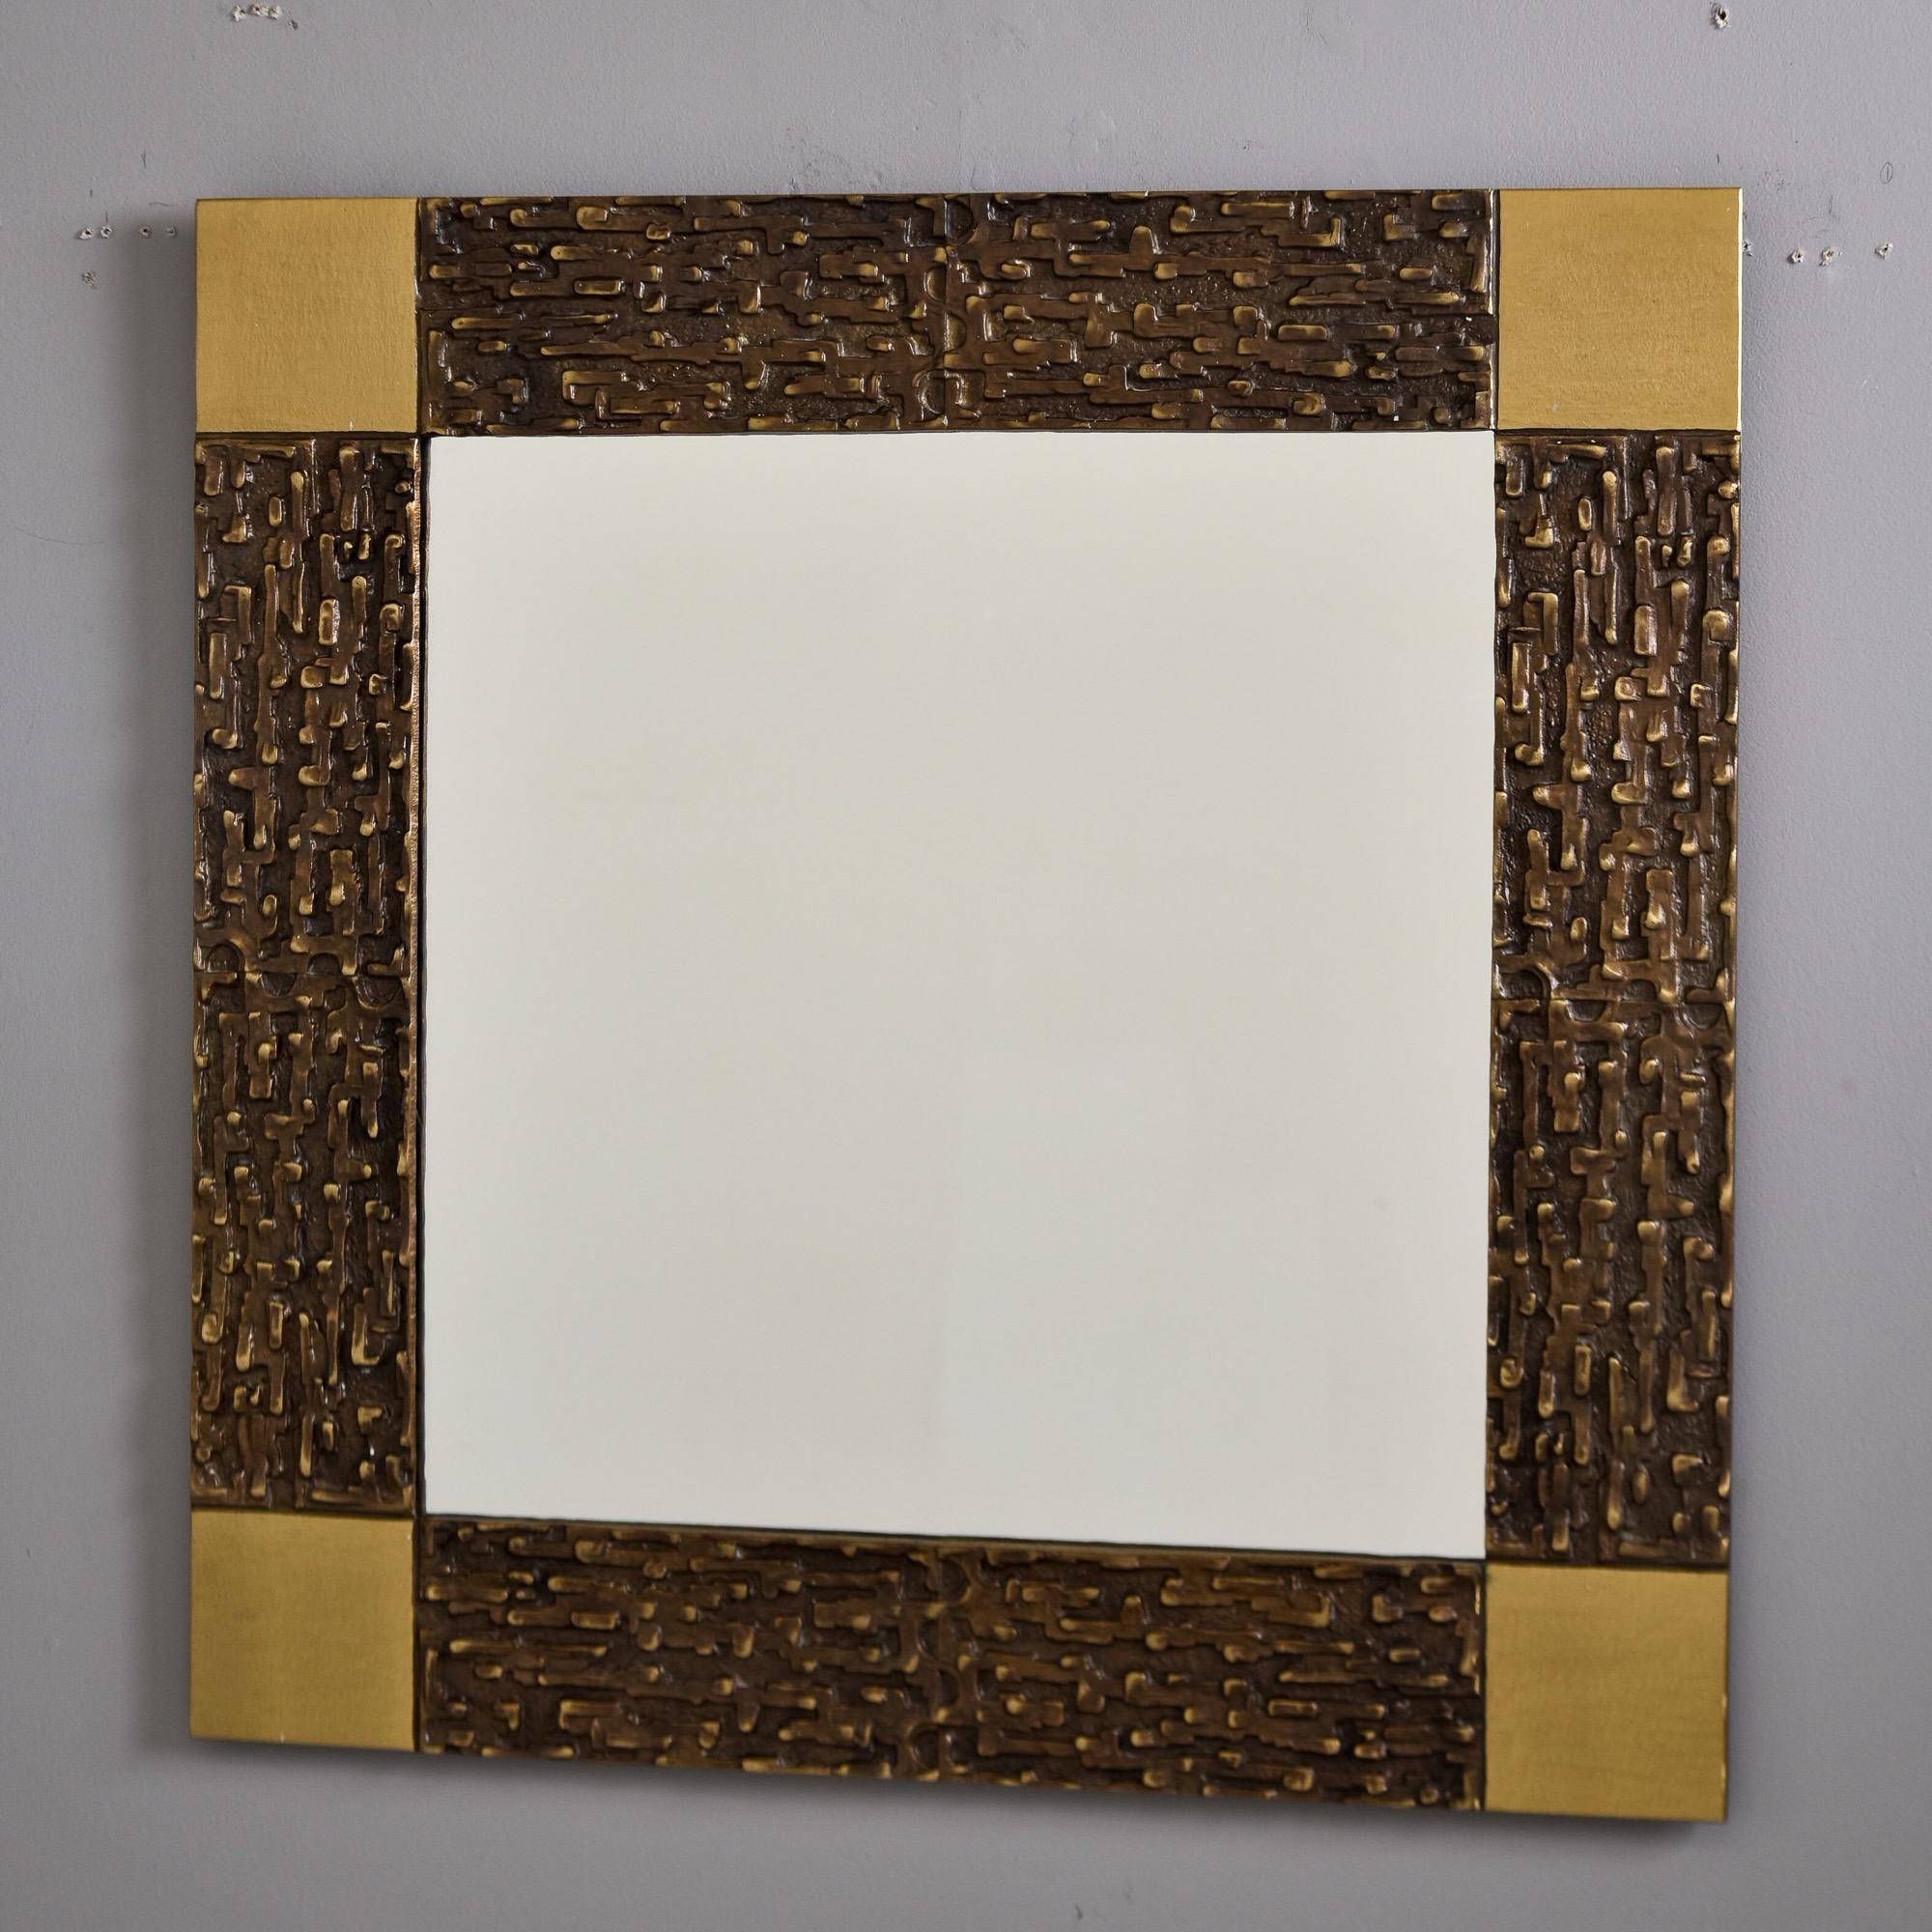  Trouvé en Italie, ce miroir de style brutaliste date des années 1970. Le cadre carré en laiton présente une surface fortement texturée, de couleur bronze foncé, avec des coins contrastés en laiton brossé. Fabricant inconnu. Taille réelle du miroir